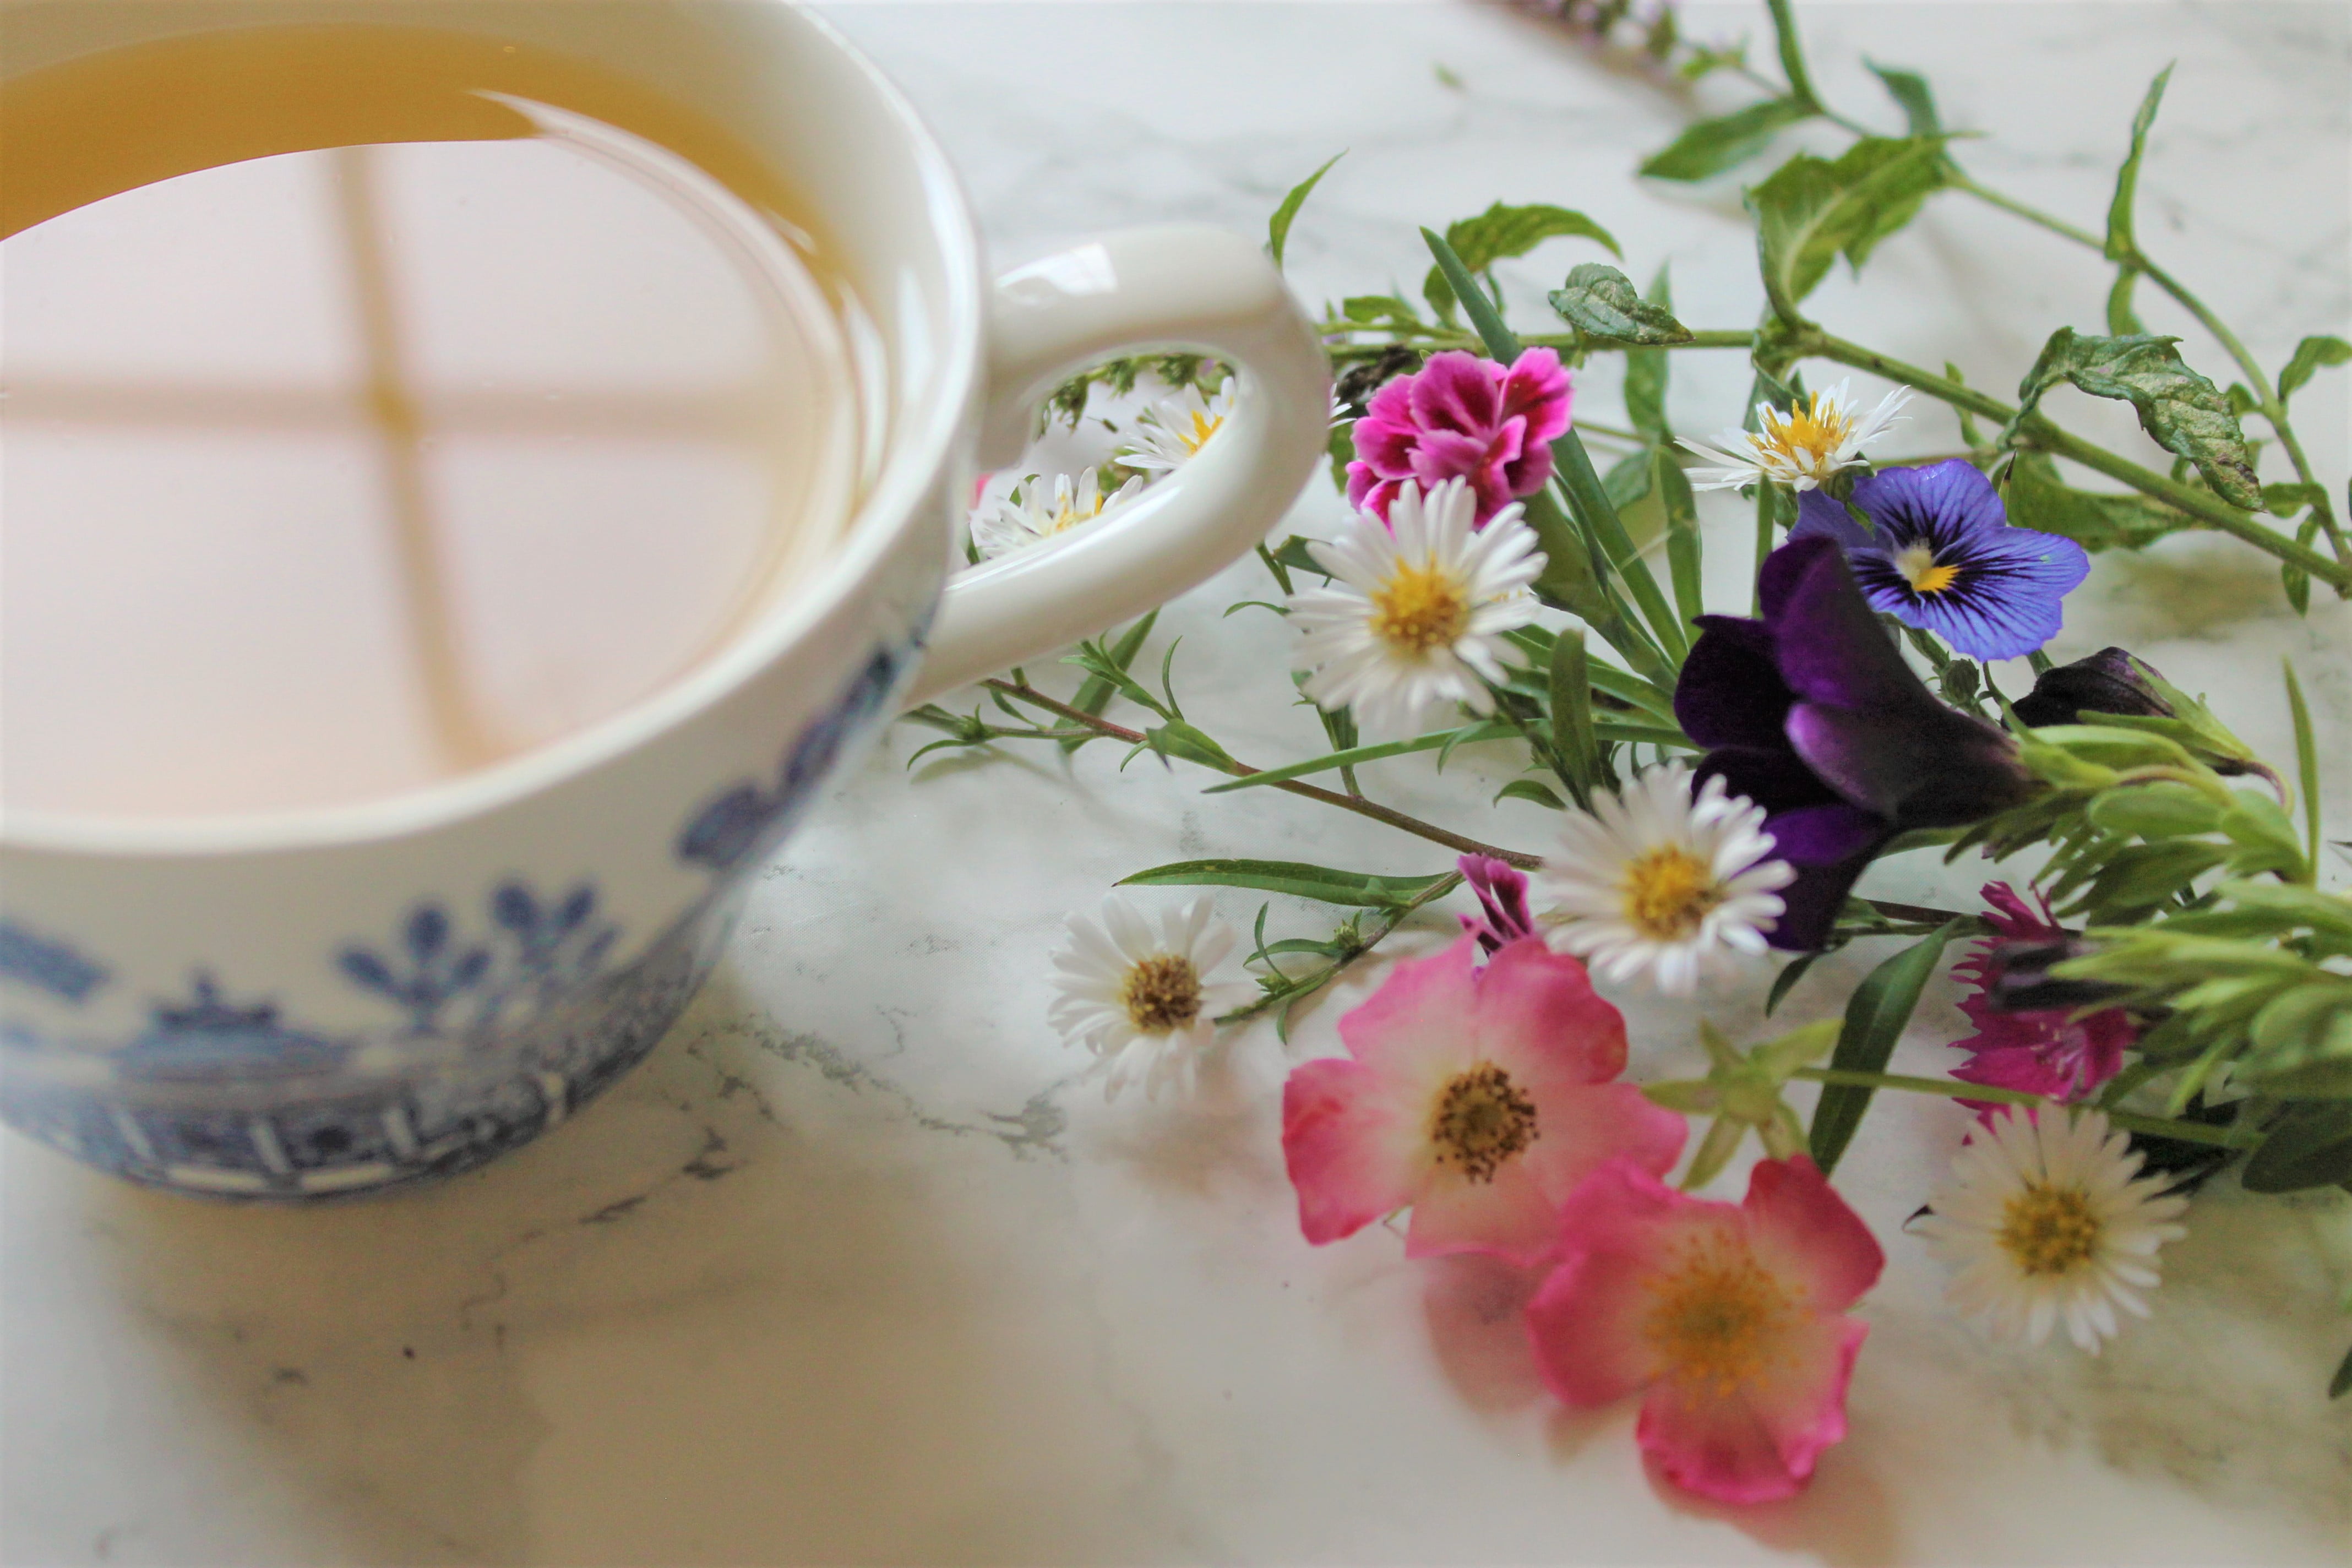 pukka nighttime tea flowers